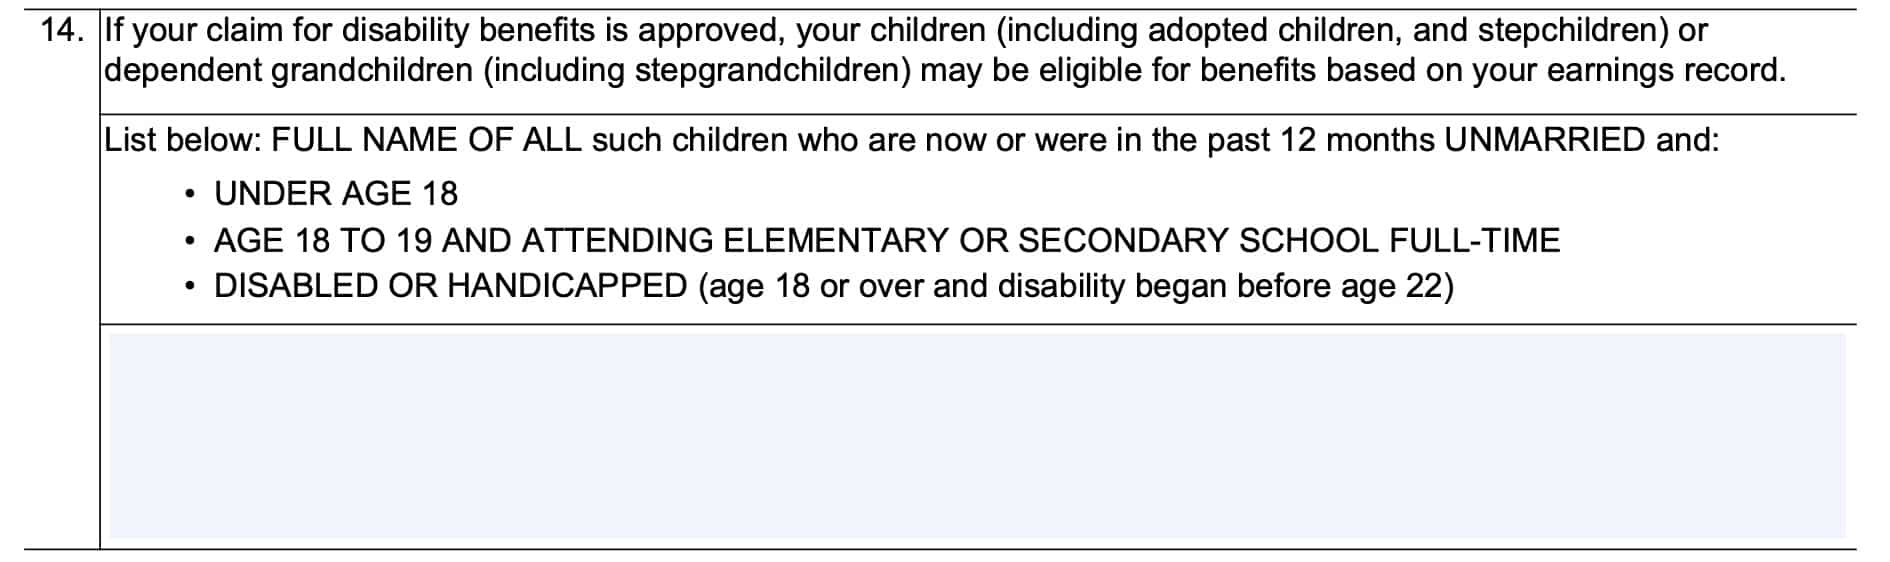 Form ssa-16 eligible children information